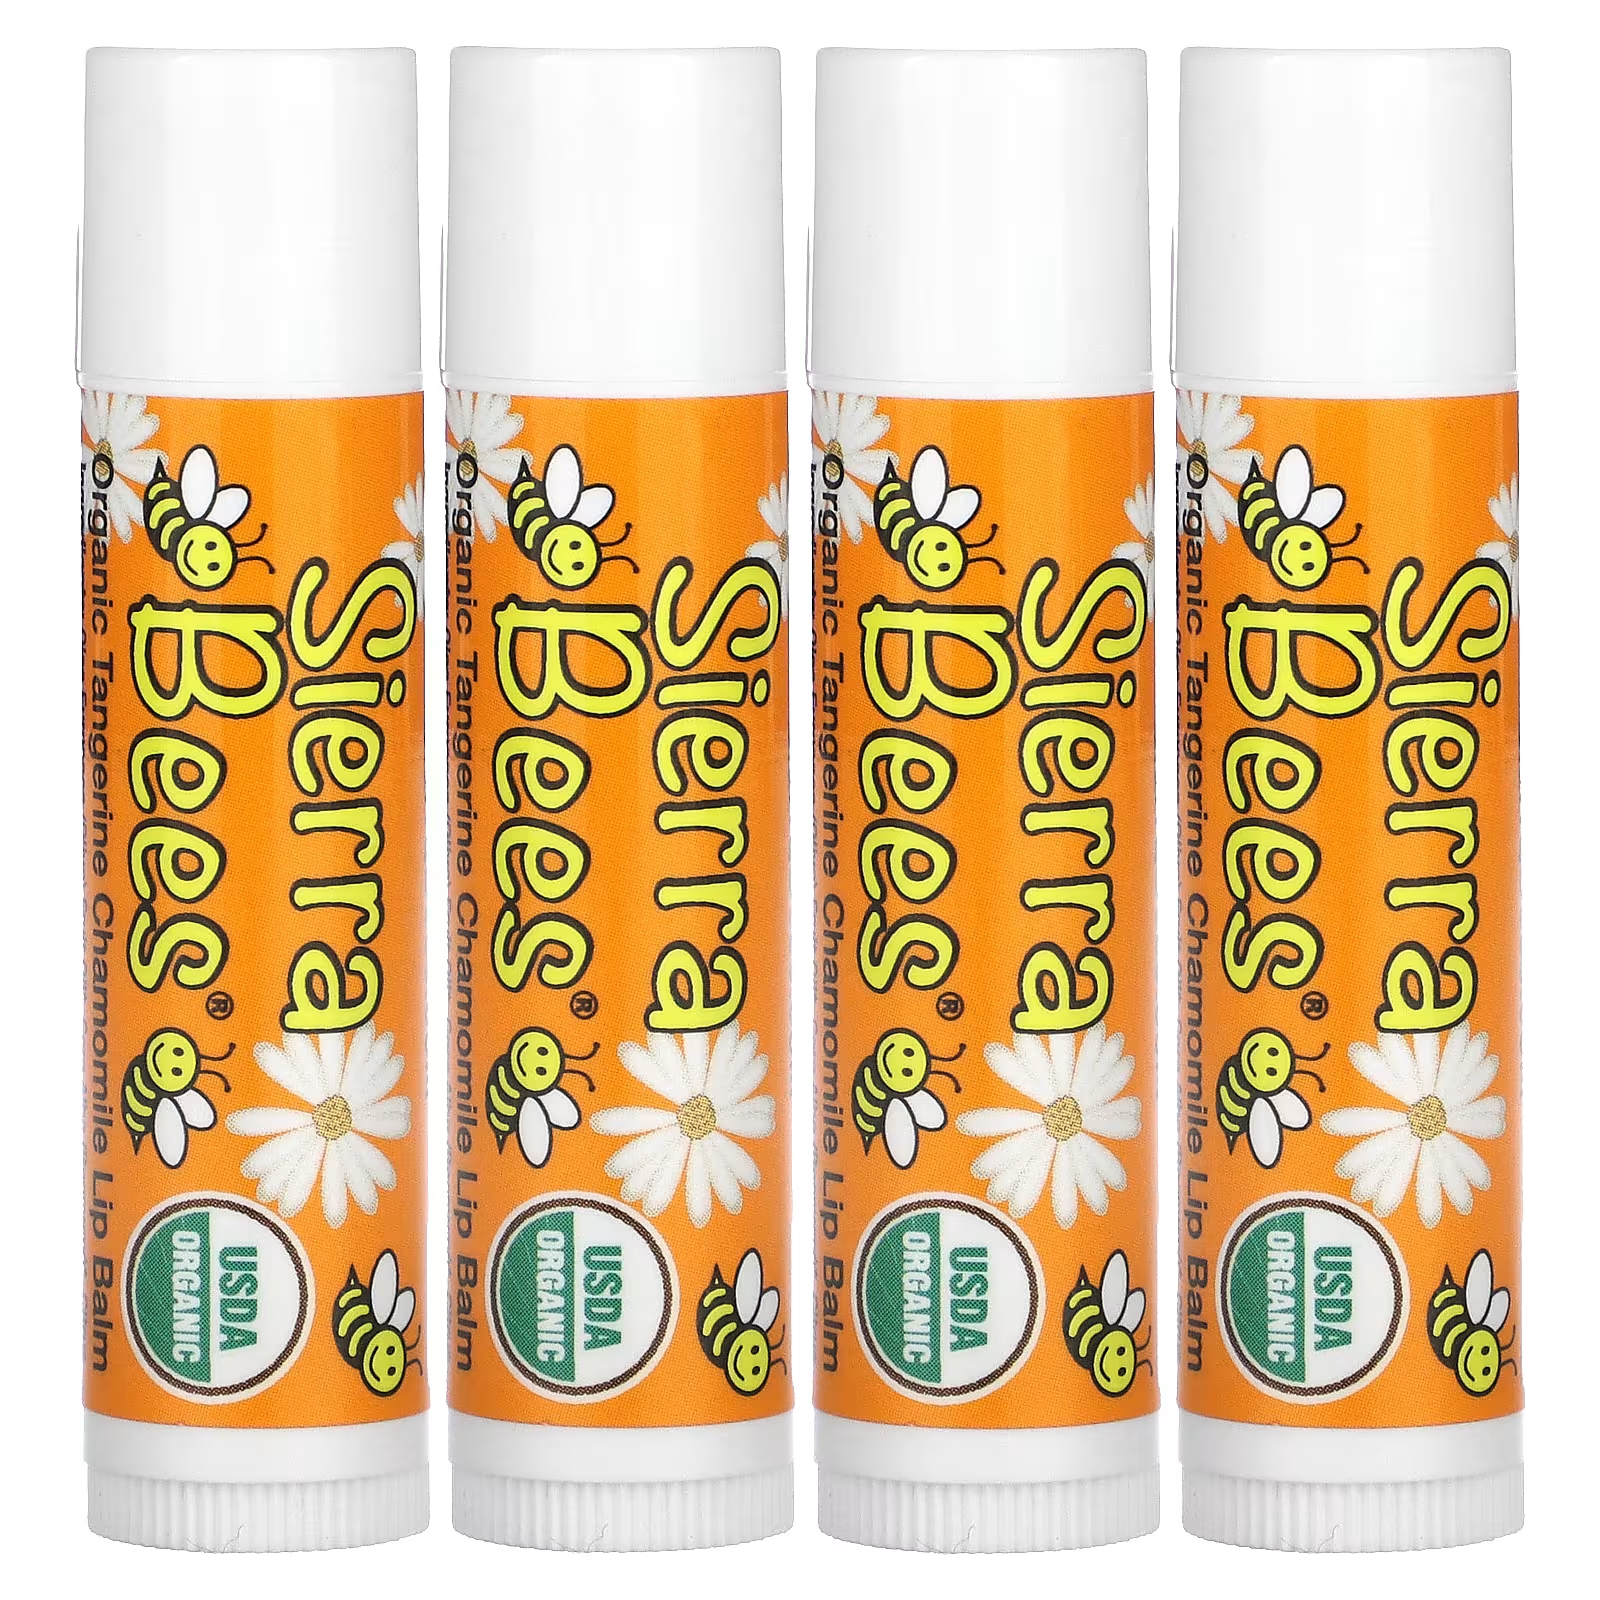 Органические бальзамы для губ Sierra Bees «Мандарин и ромашка», 4 упаковки по 0,15 унции (4,25 г) каждая